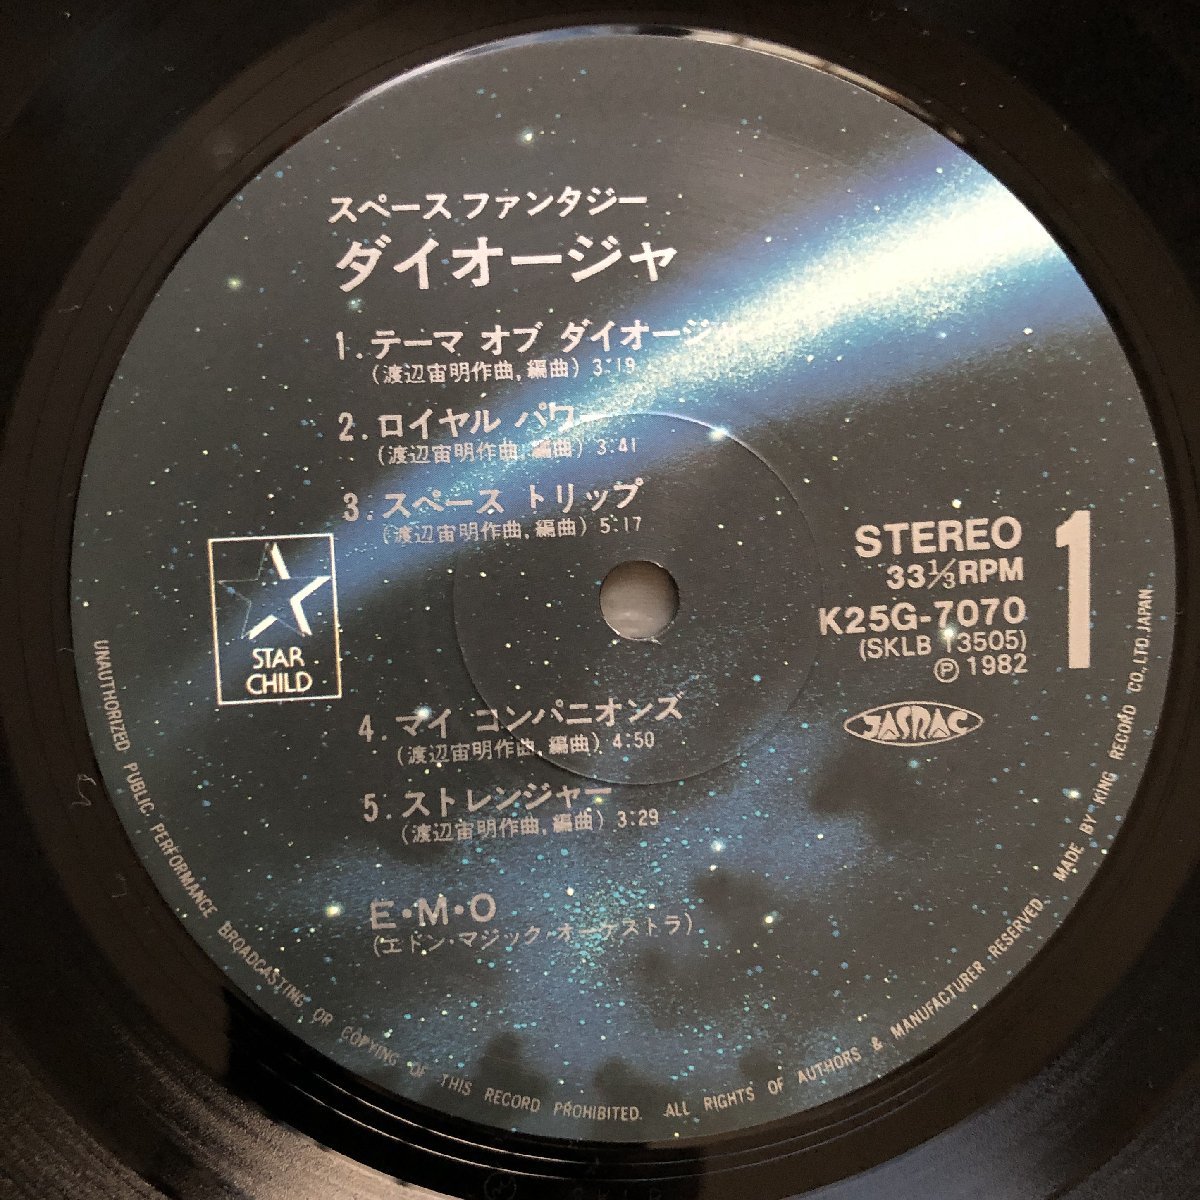  царапина нет прекрасный запись прекрасный jacket 1982 год сильнейший Robot большой o-jaRobot King Daioja LP запись Space фэнтези большой o-ja с лентой аниме manga (манга) 